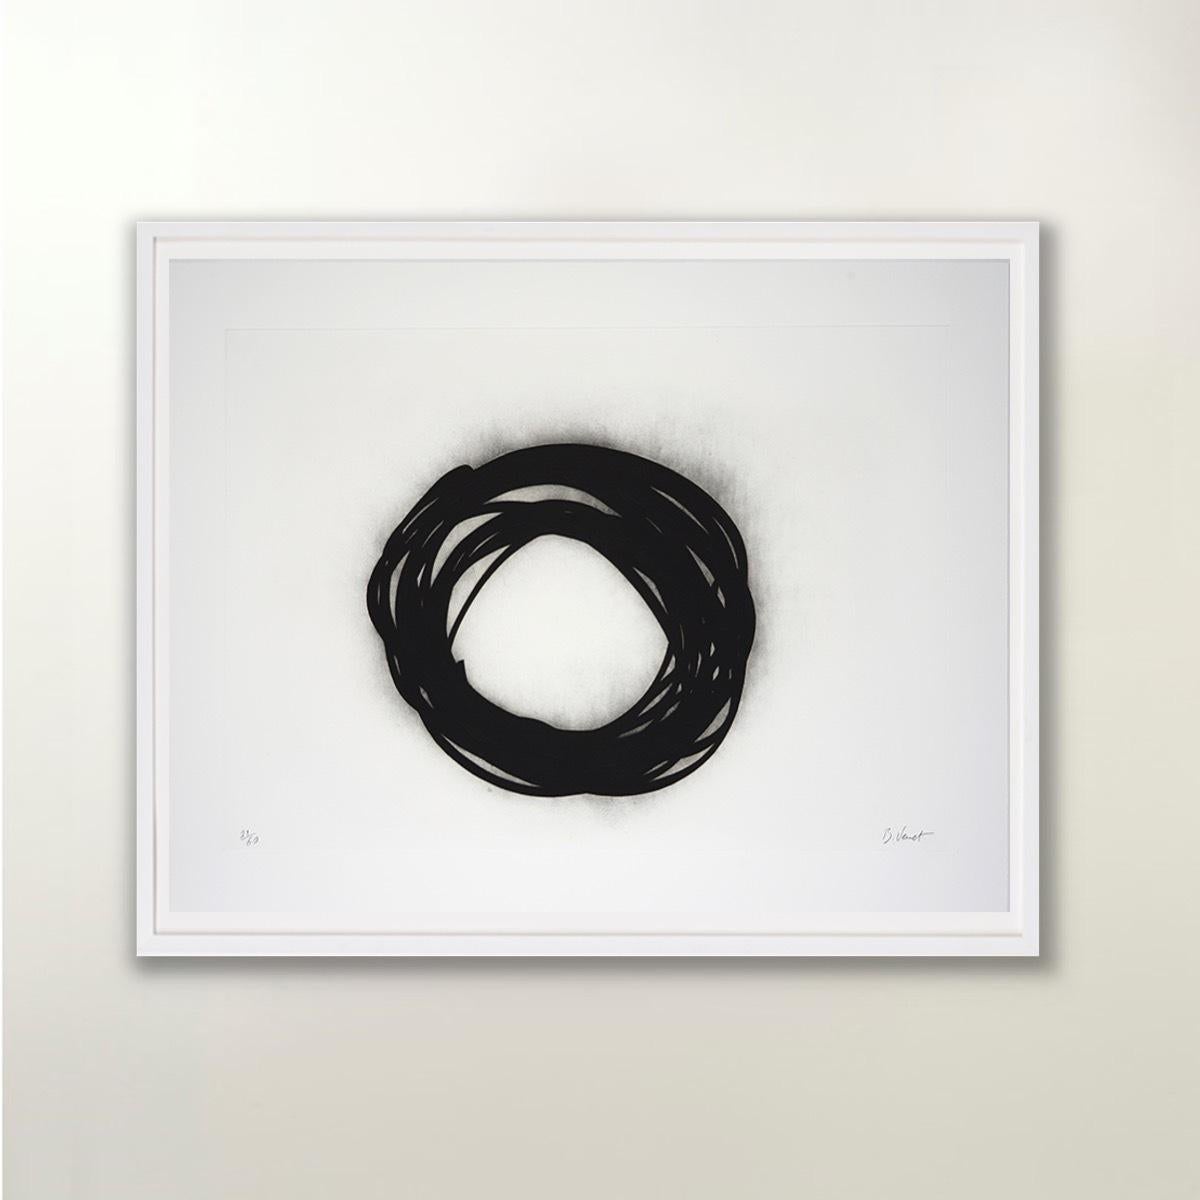 Grib - Contemporain, 21e siècle, Gravure, Noir, Édition limitée, Portfolio - Gris Figurative Print par Bernar Venet